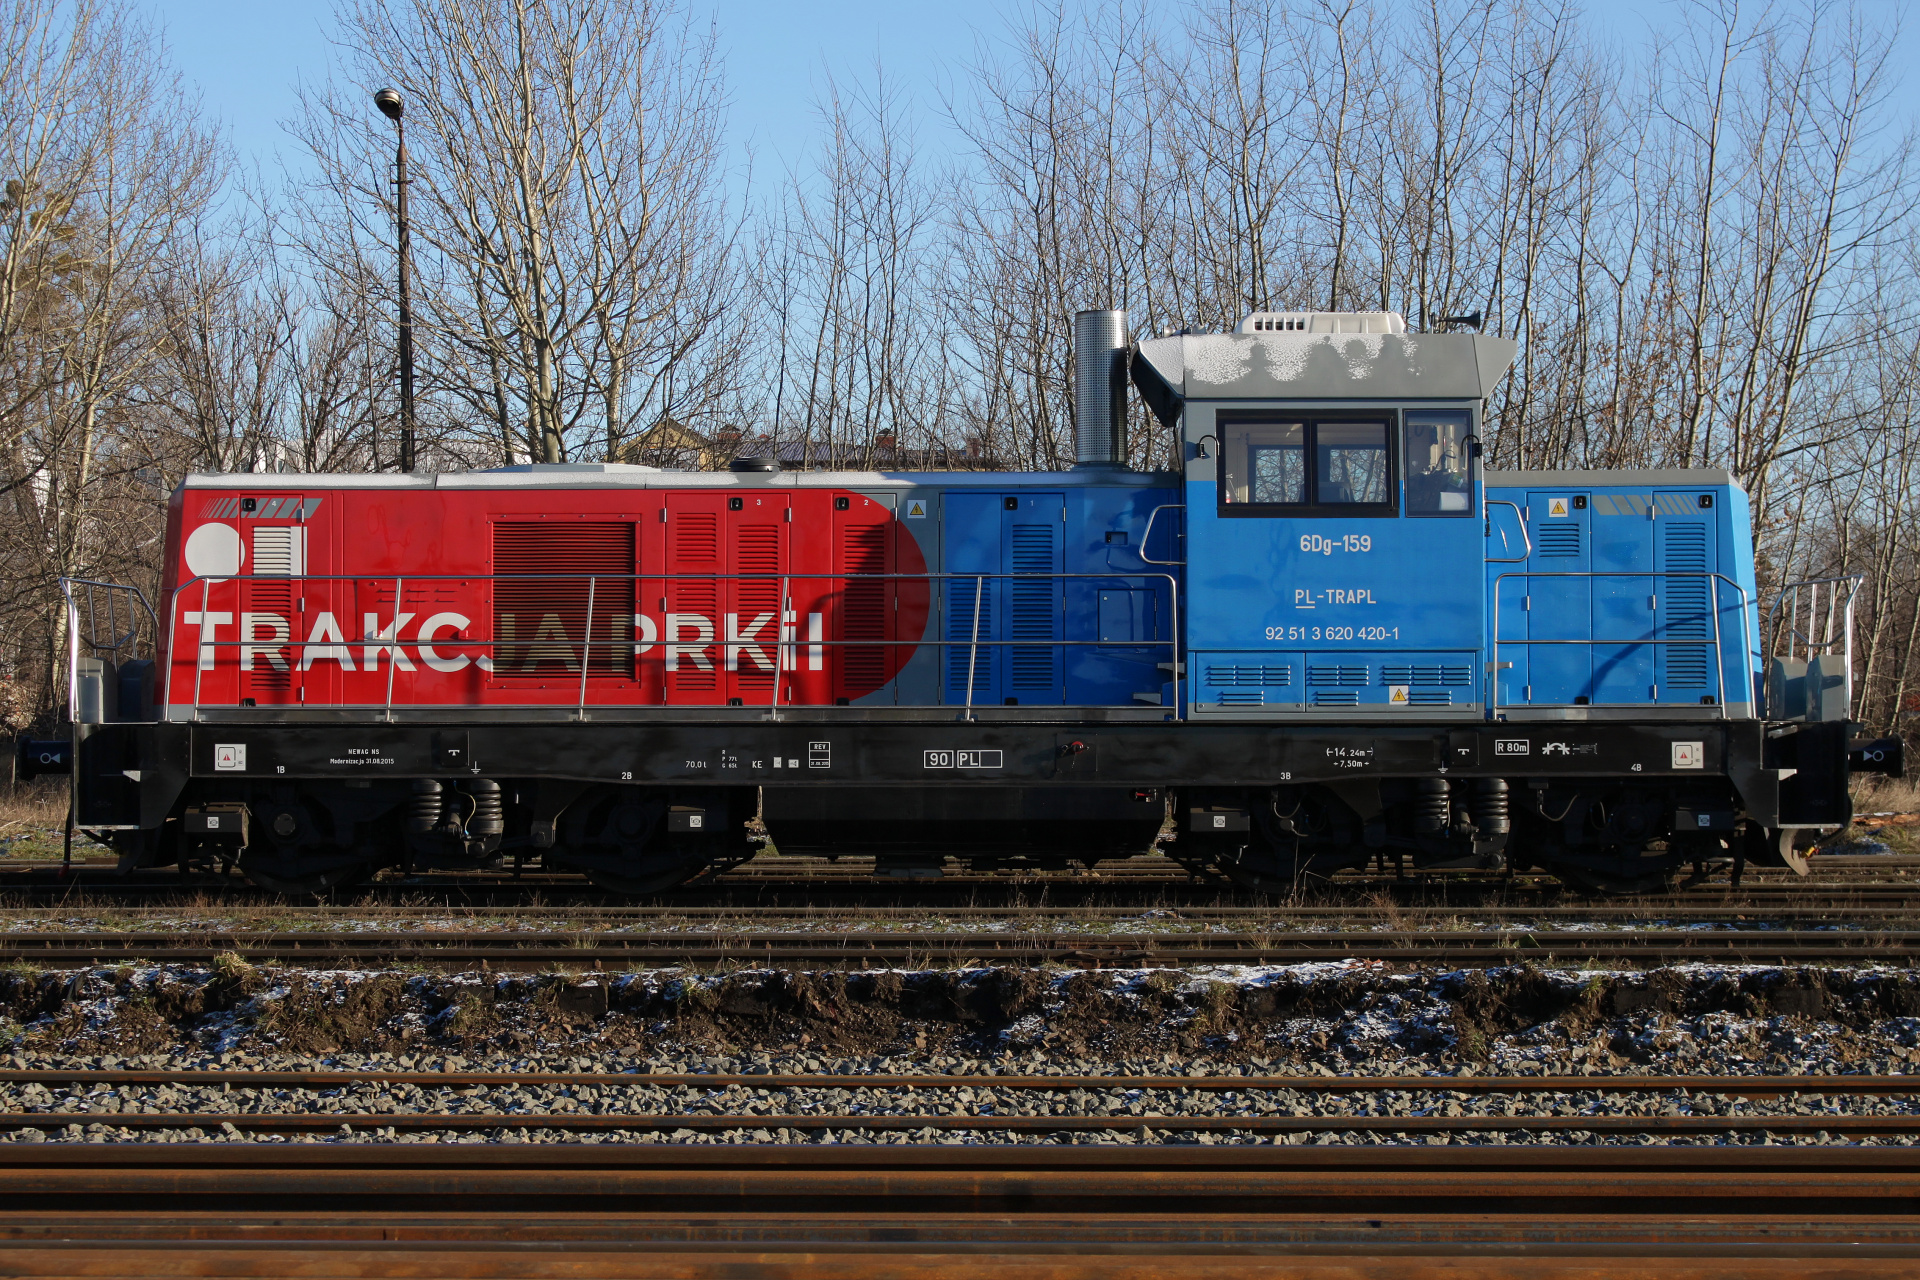 Newag 6Dg-159 (Pojazdy » Pociągi i lokomotywy)